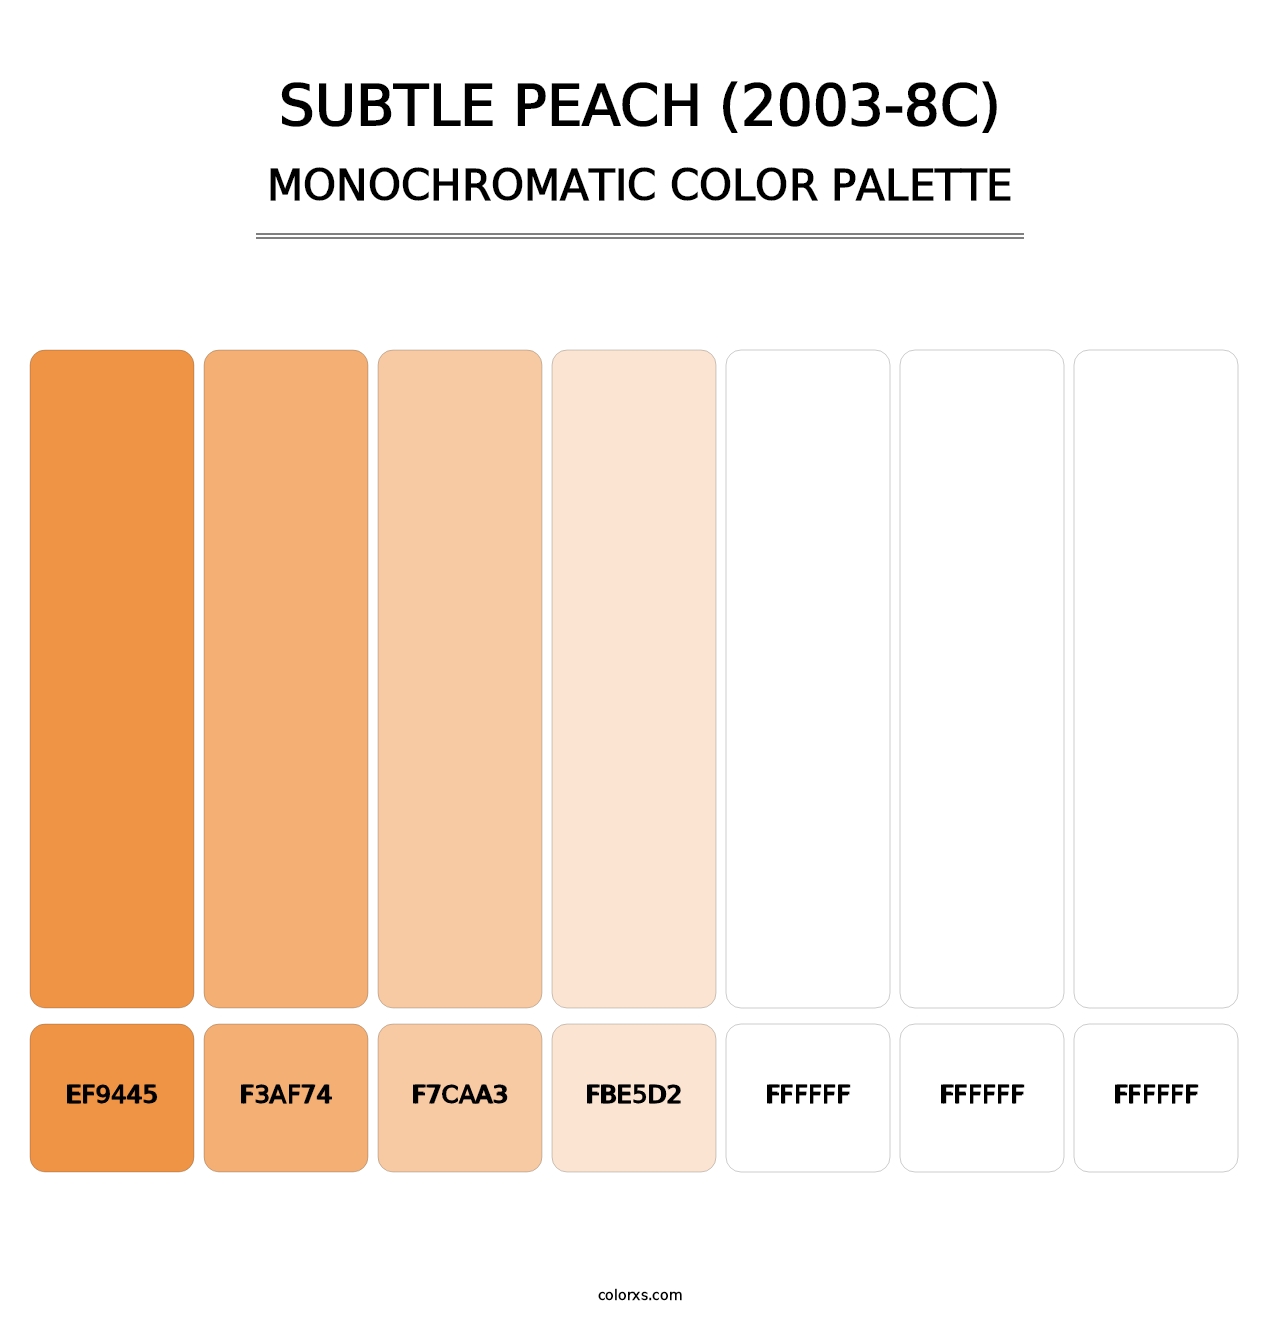 Subtle Peach (2003-8C) - Monochromatic Color Palette